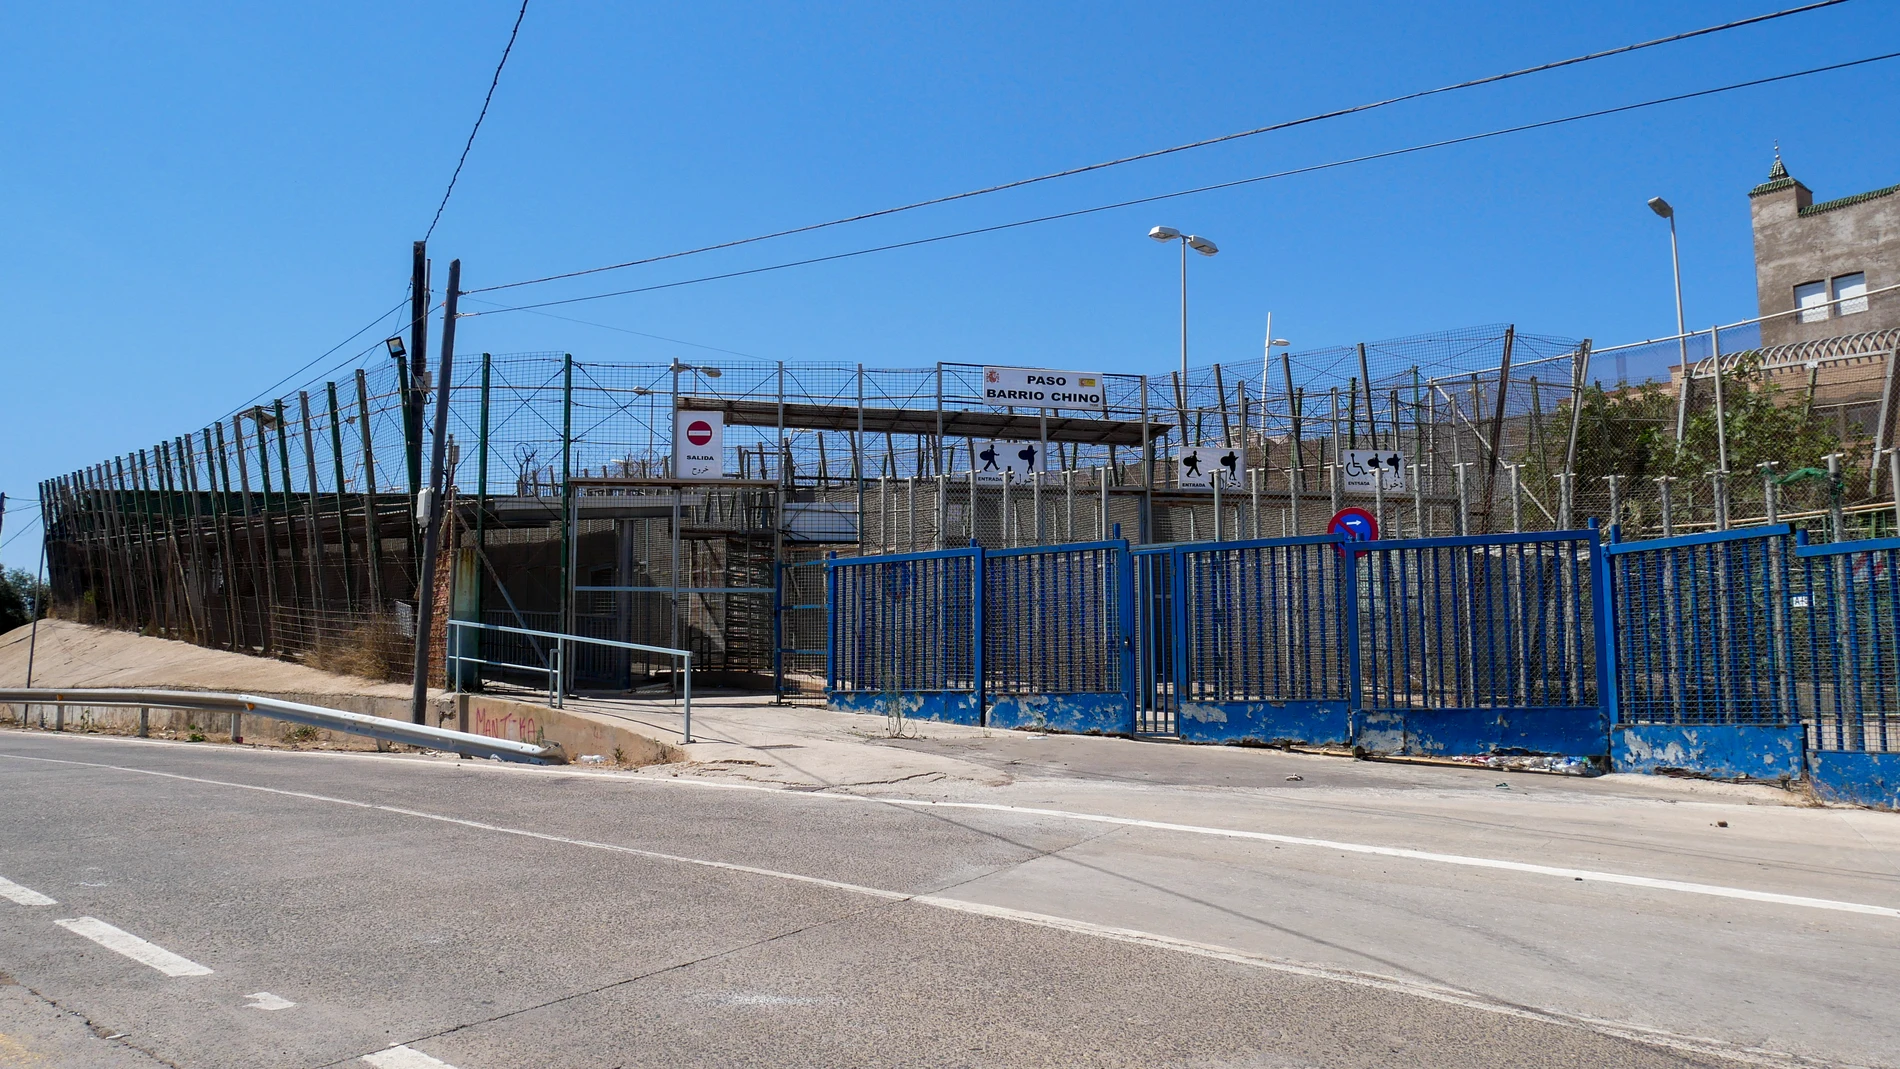 Paso fronterizo de Barrio Chino, en la ciudad autónoma de Melilla. EFE/ Paqui Sánchez